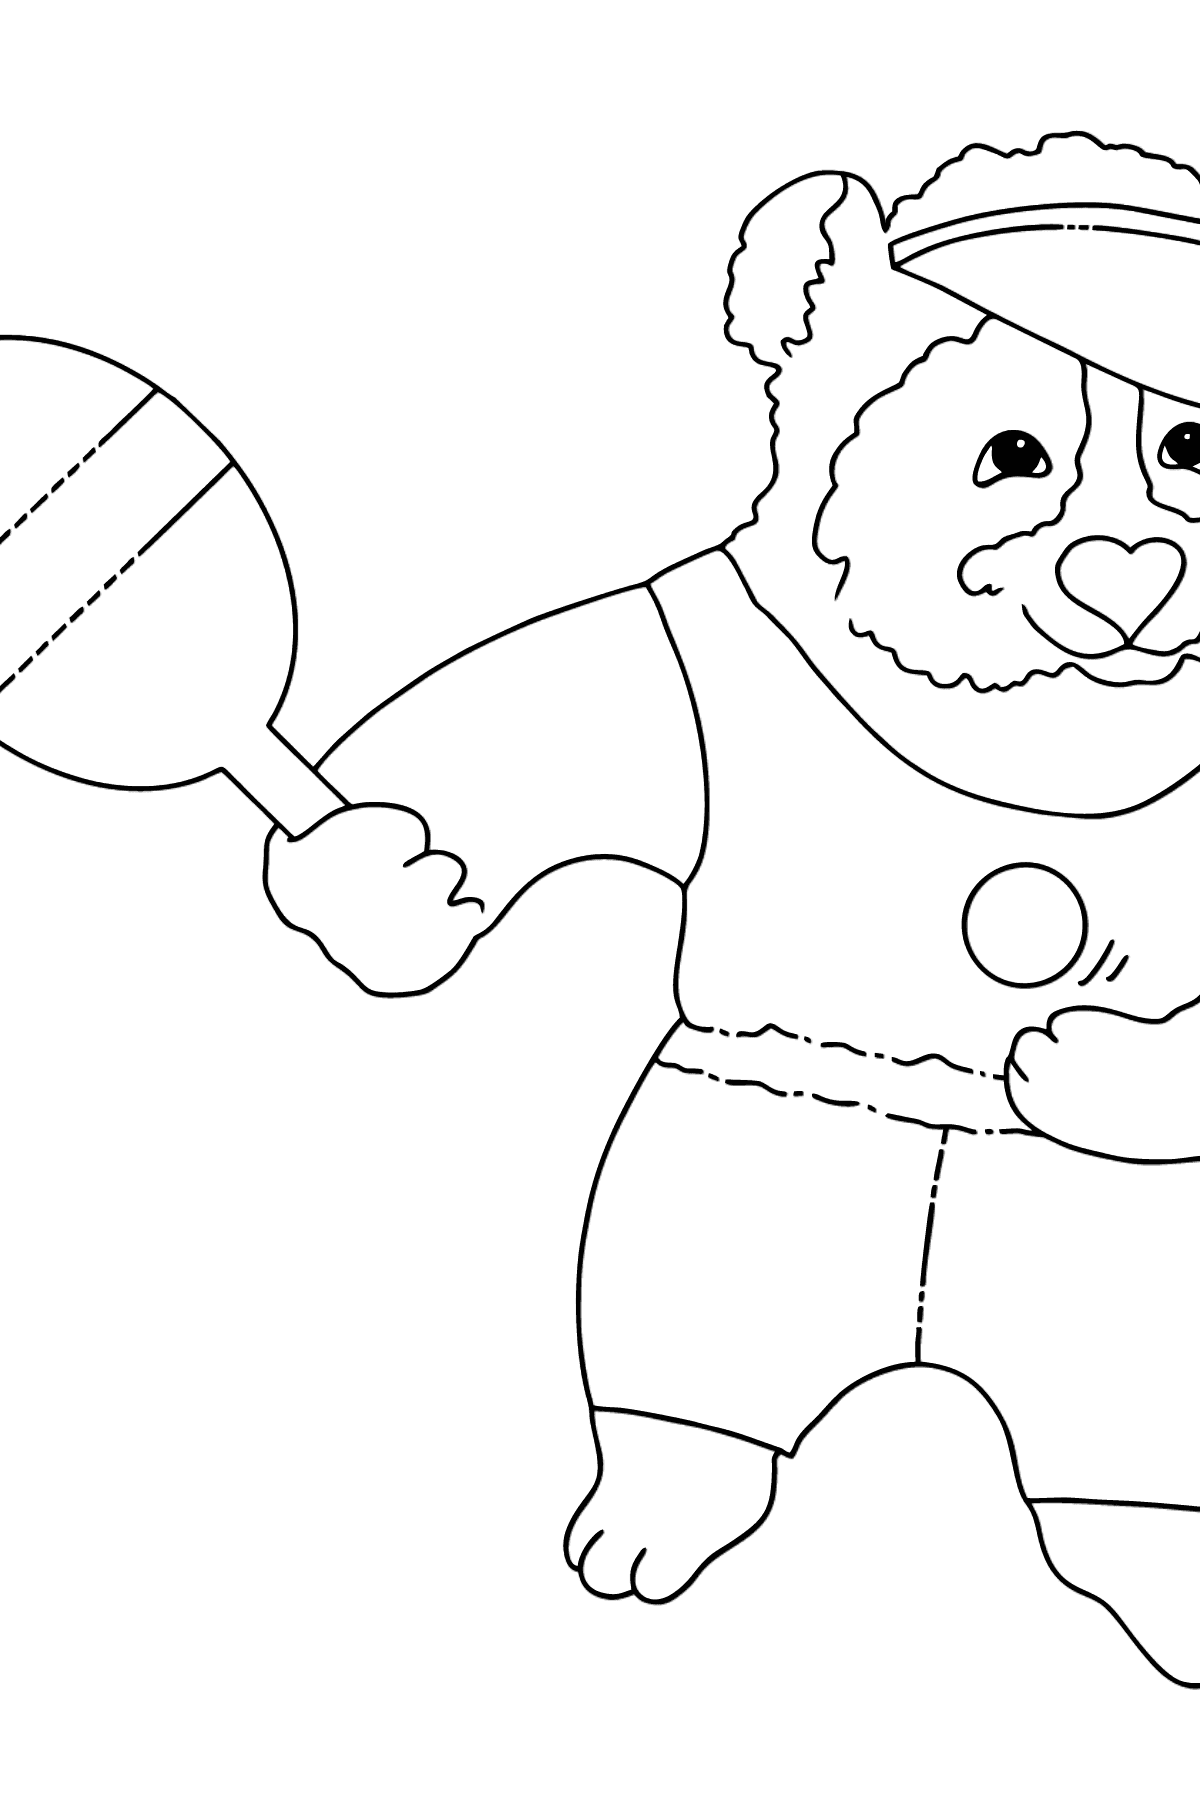 Tegning til fargelegging bedårende panda (enkelt) - Tegninger til fargelegging for barn